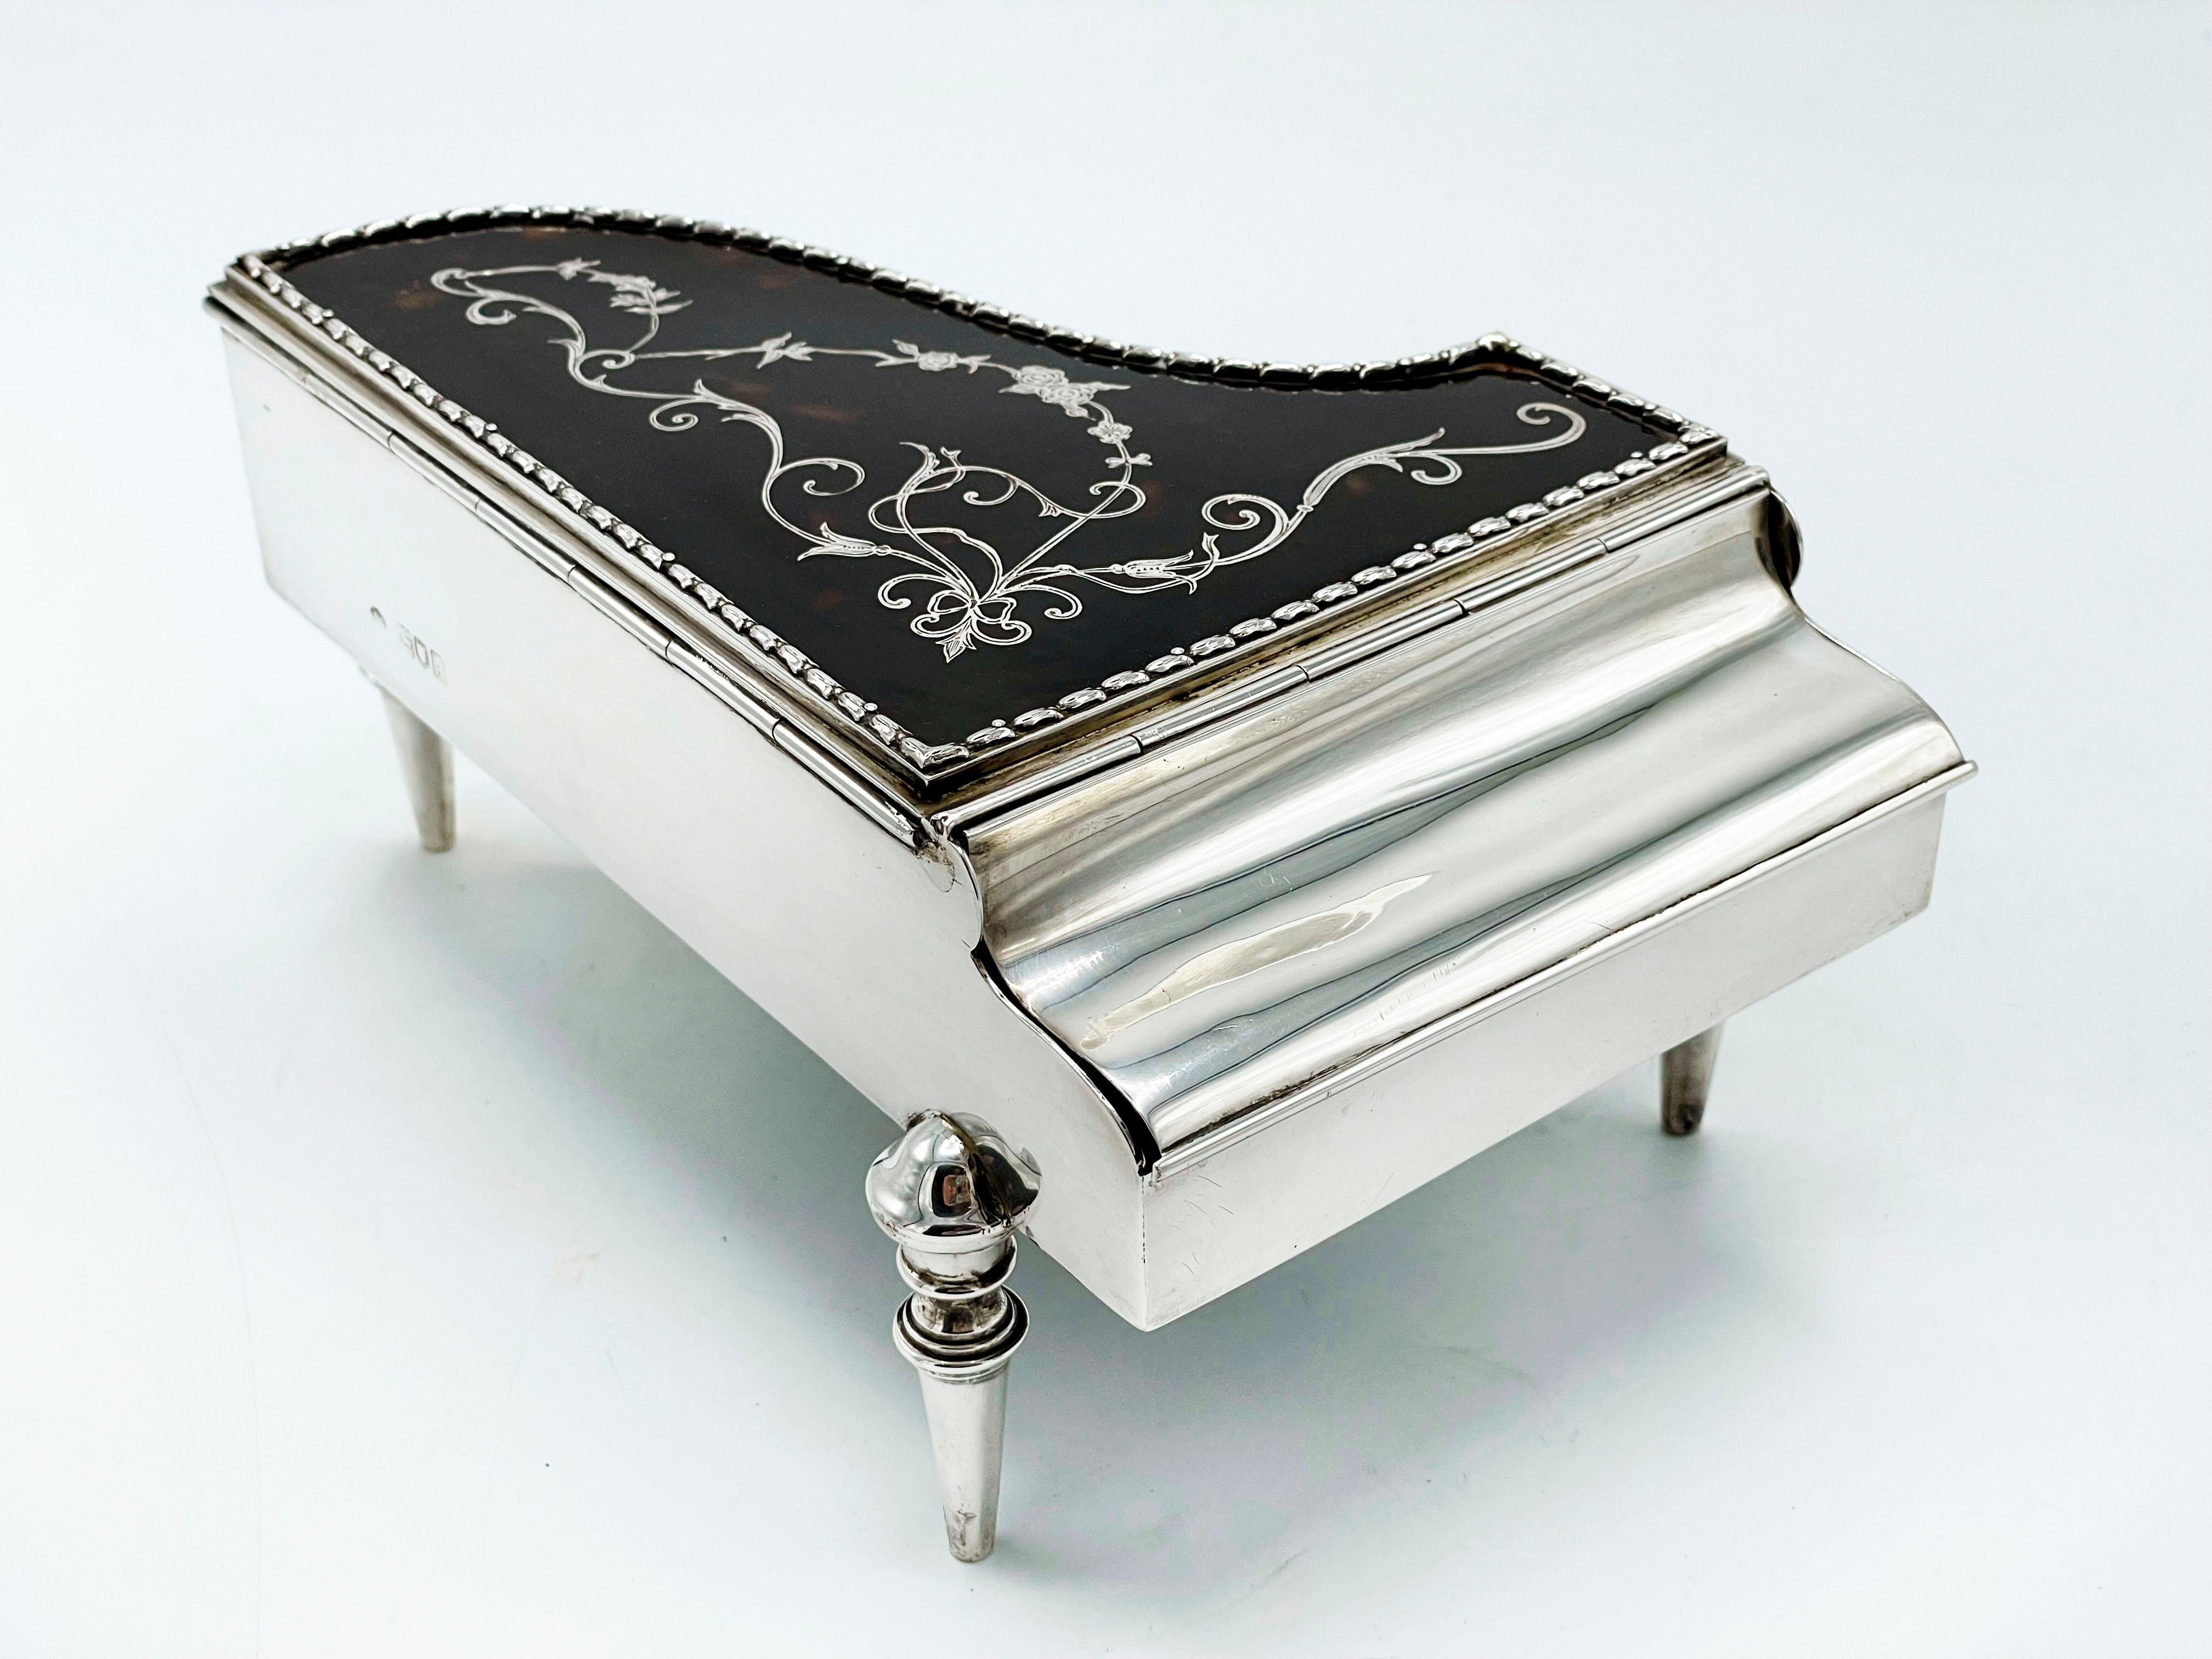 Pour les amateurs de musique.
Une boîte à bijoux anglaise en argent très inhabituelle, en forme de piano à queue.
Le 